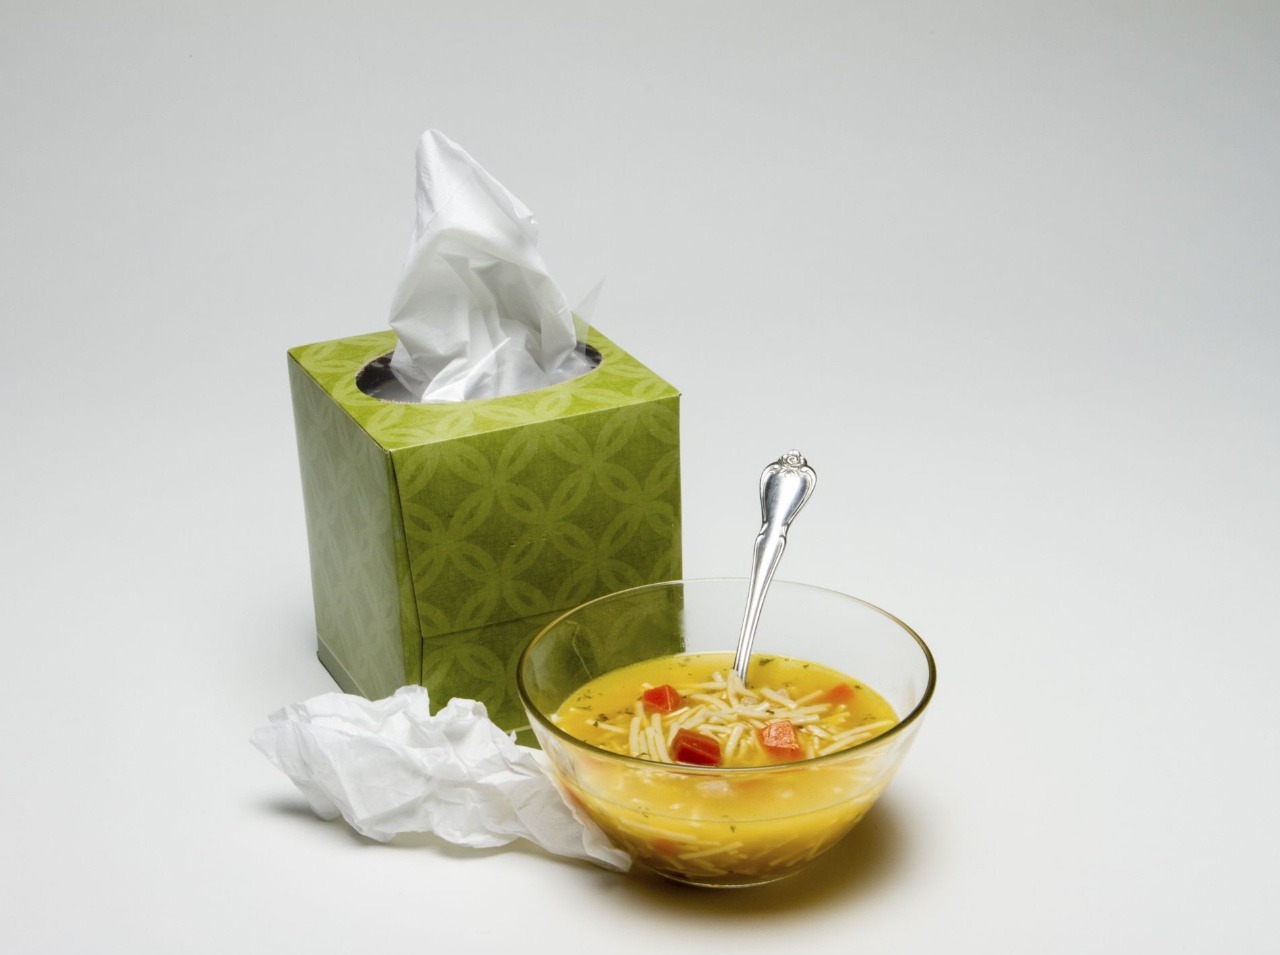 Pomôže vám slepačia polievka pri prechlaldnutí a chrípke?